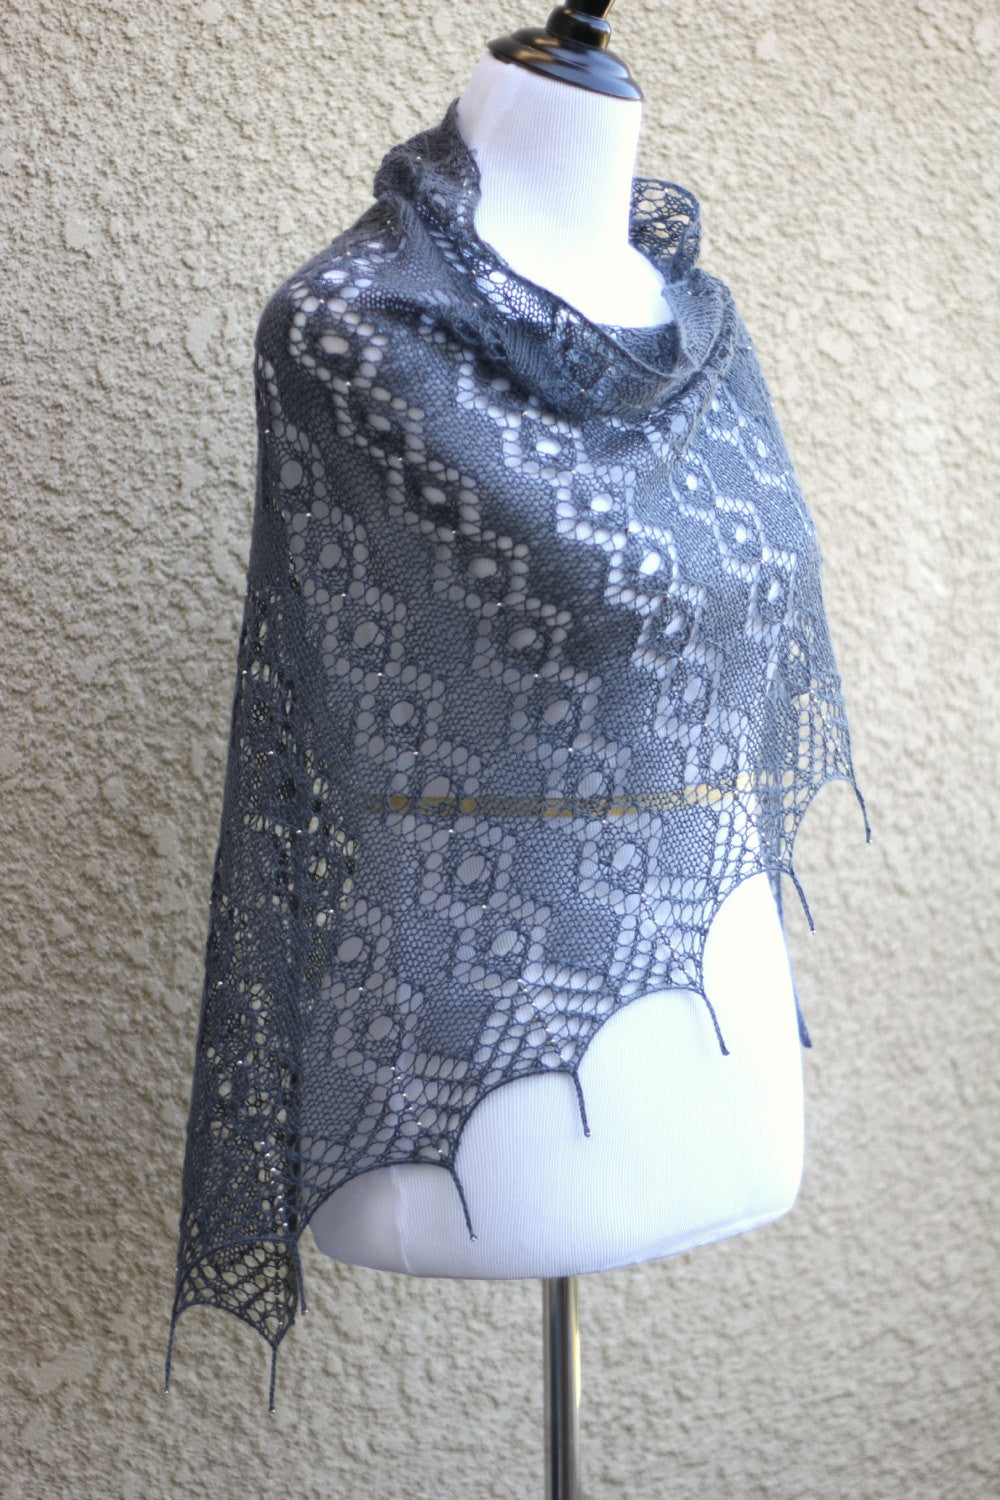 Knitting patterns - 4 knit shawl patterns bundle